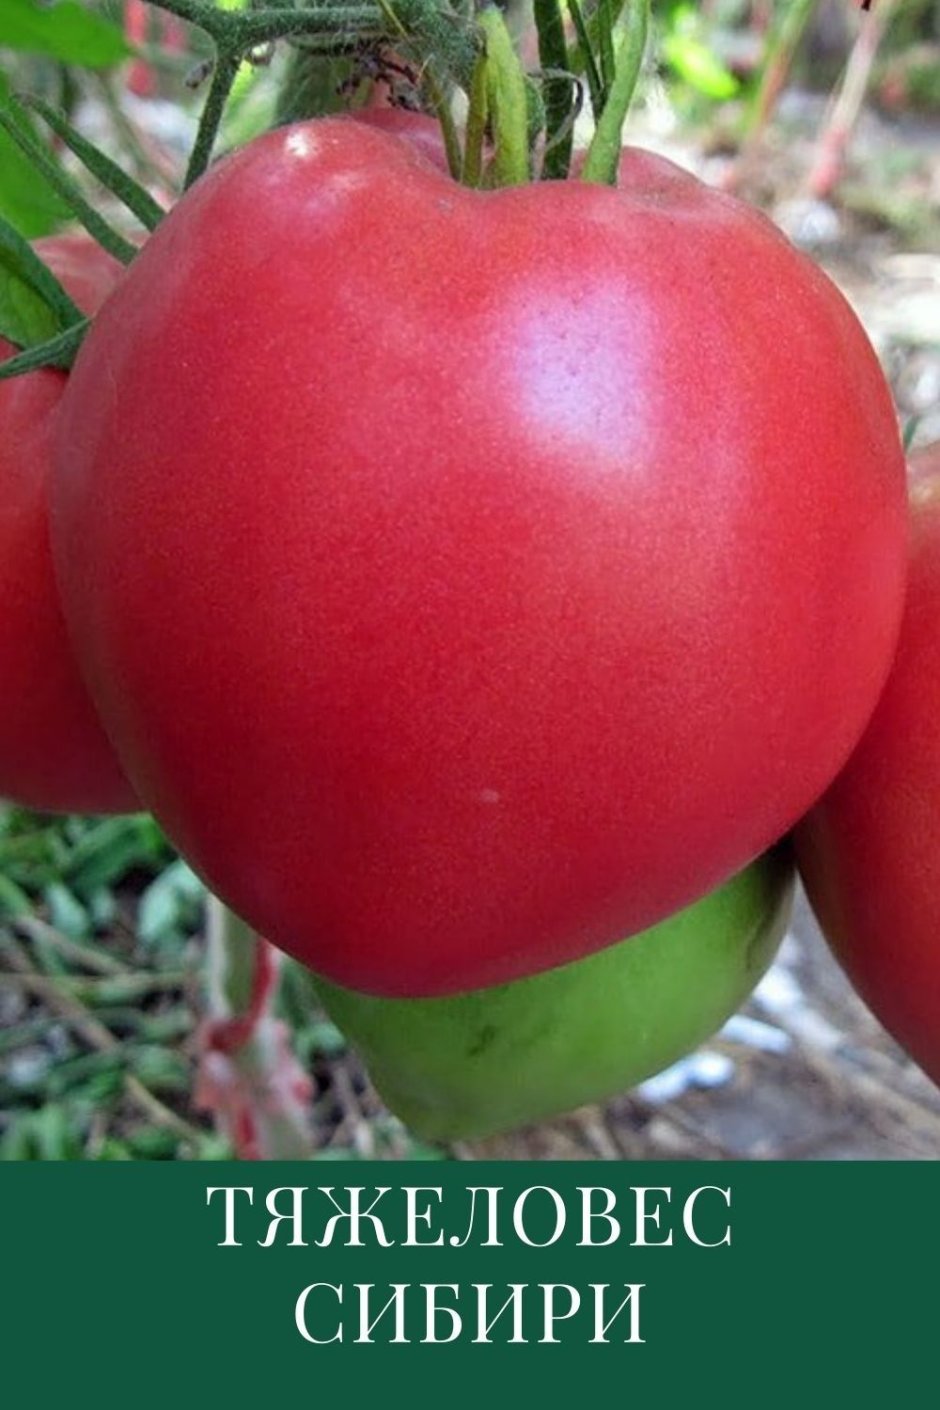 Асвон томат характеристика